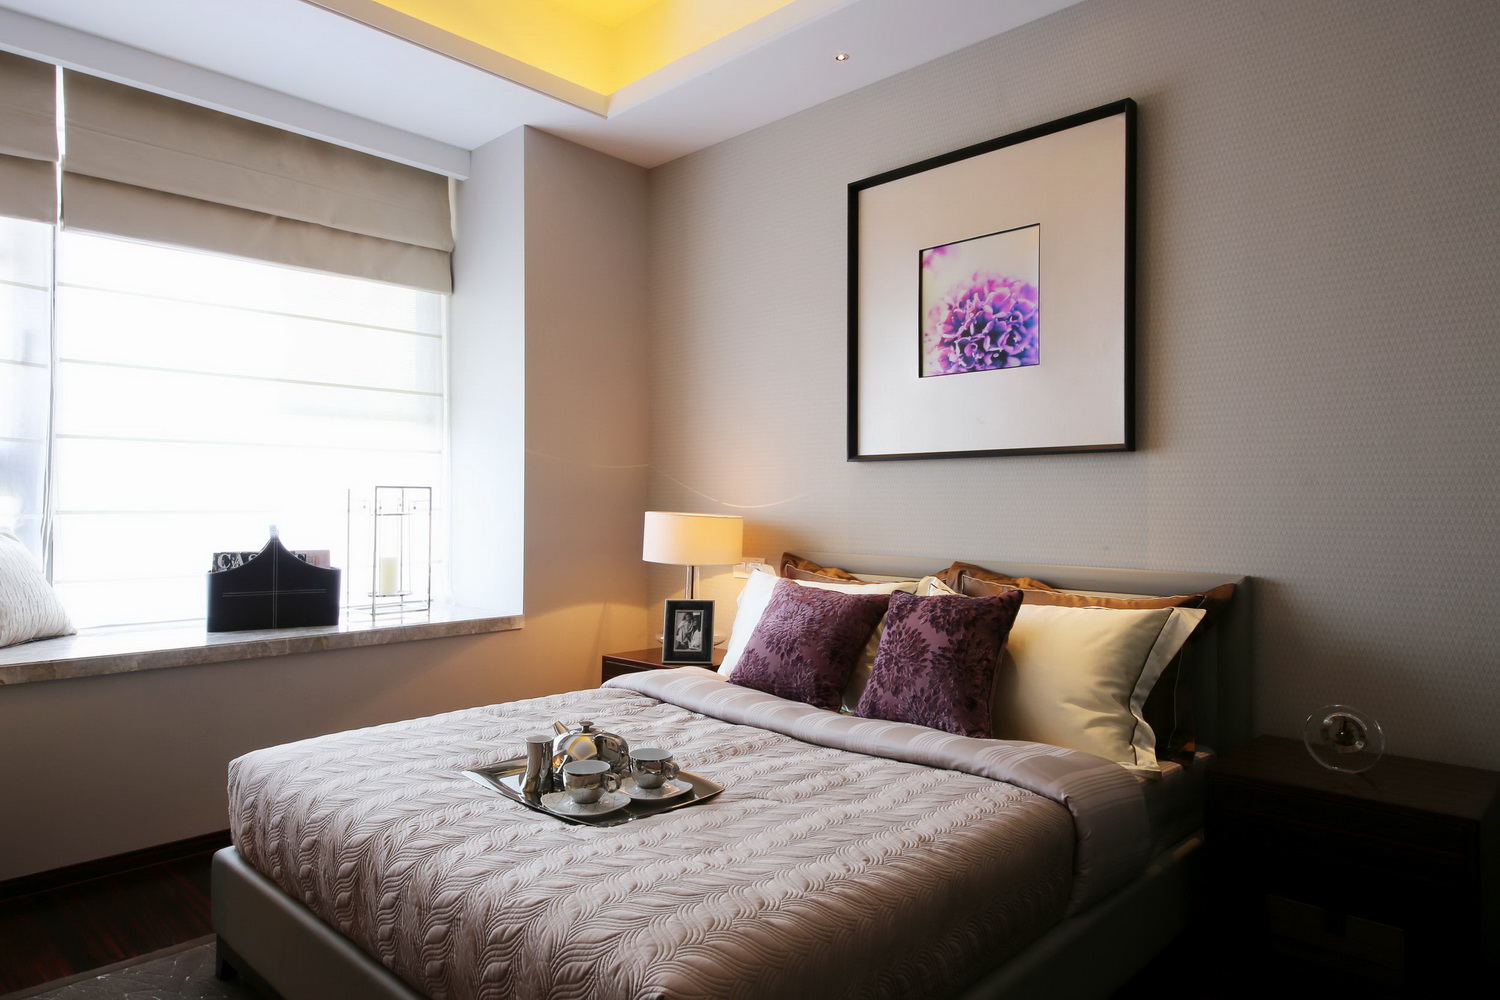 三居 港式 卧室图片来自四川建拓建筑装饰工程有限公司在港式风格的